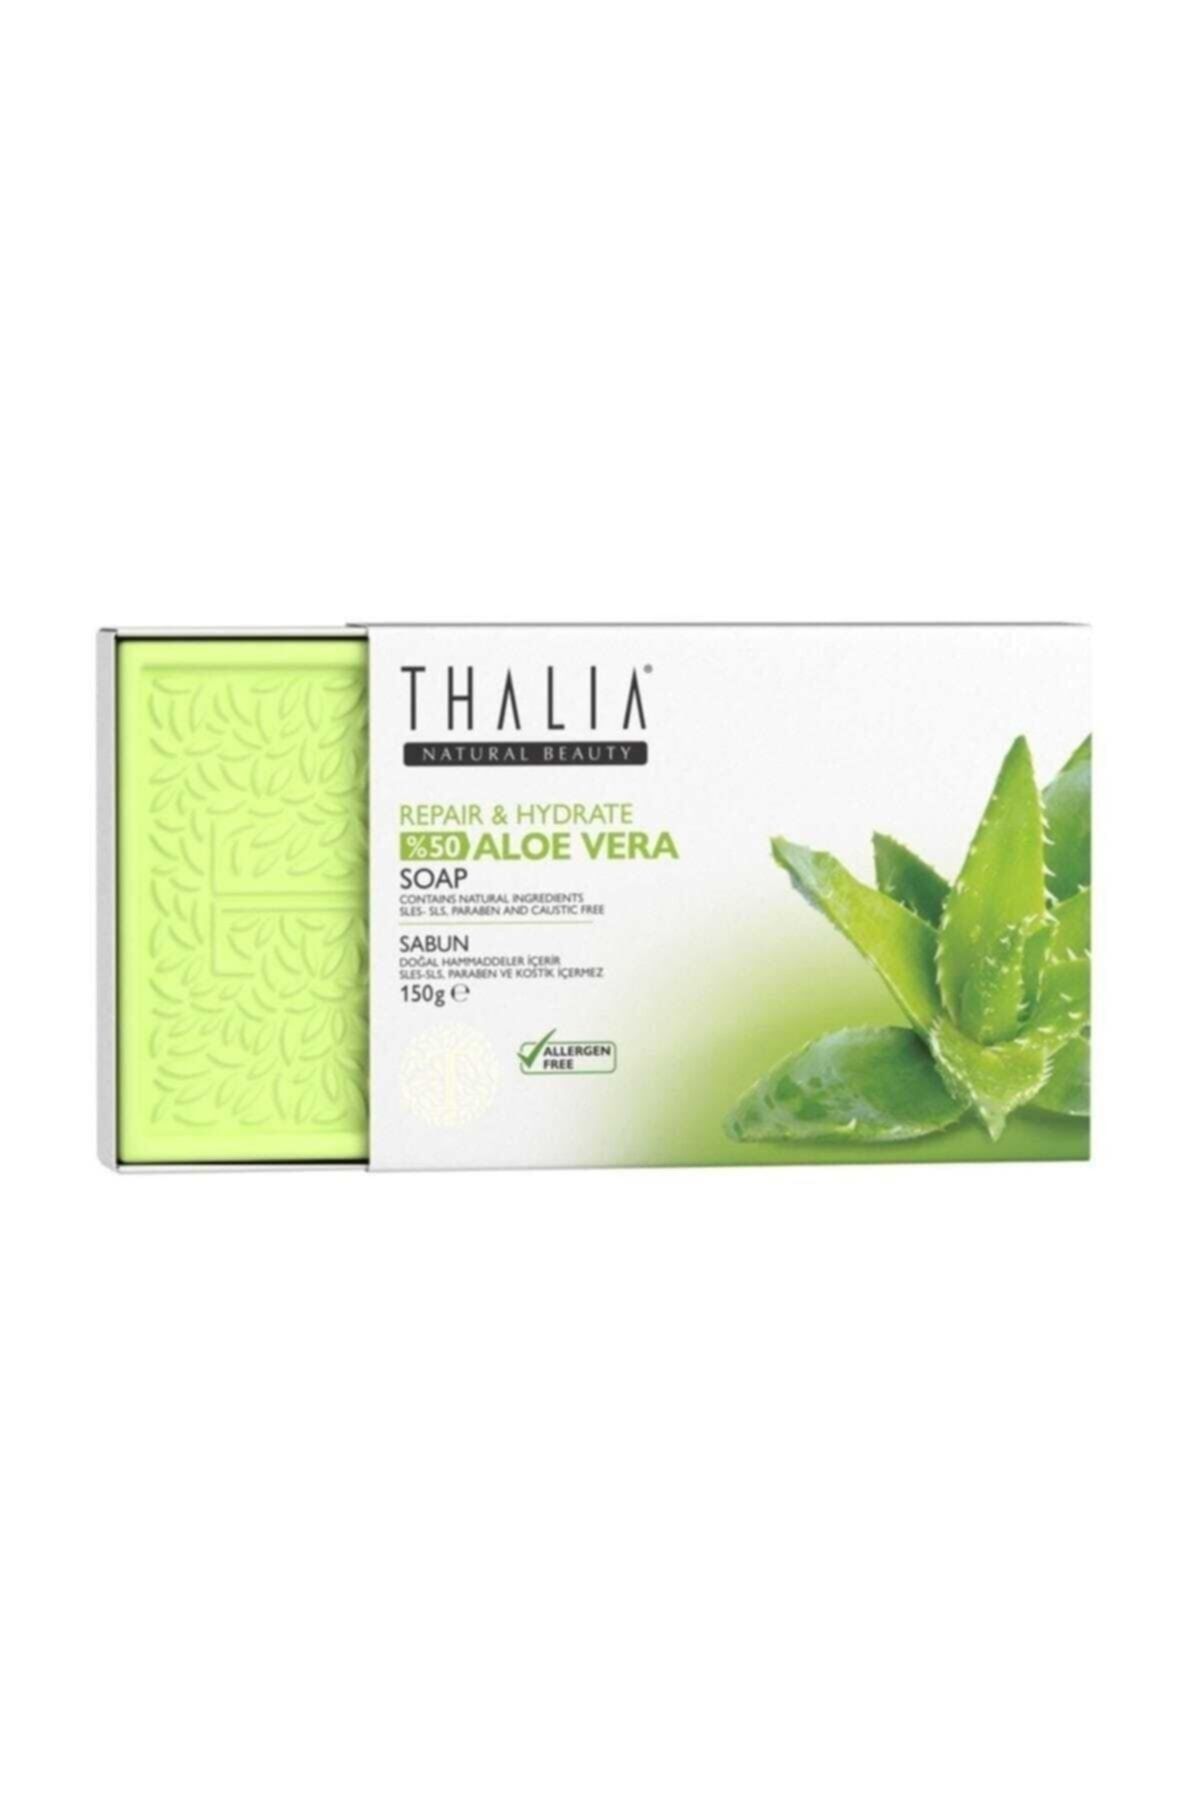 Thalia Onarıcı Etkili %99 Aloe Vera Özlü Doğal Katı Sabun 75 Gr X 2